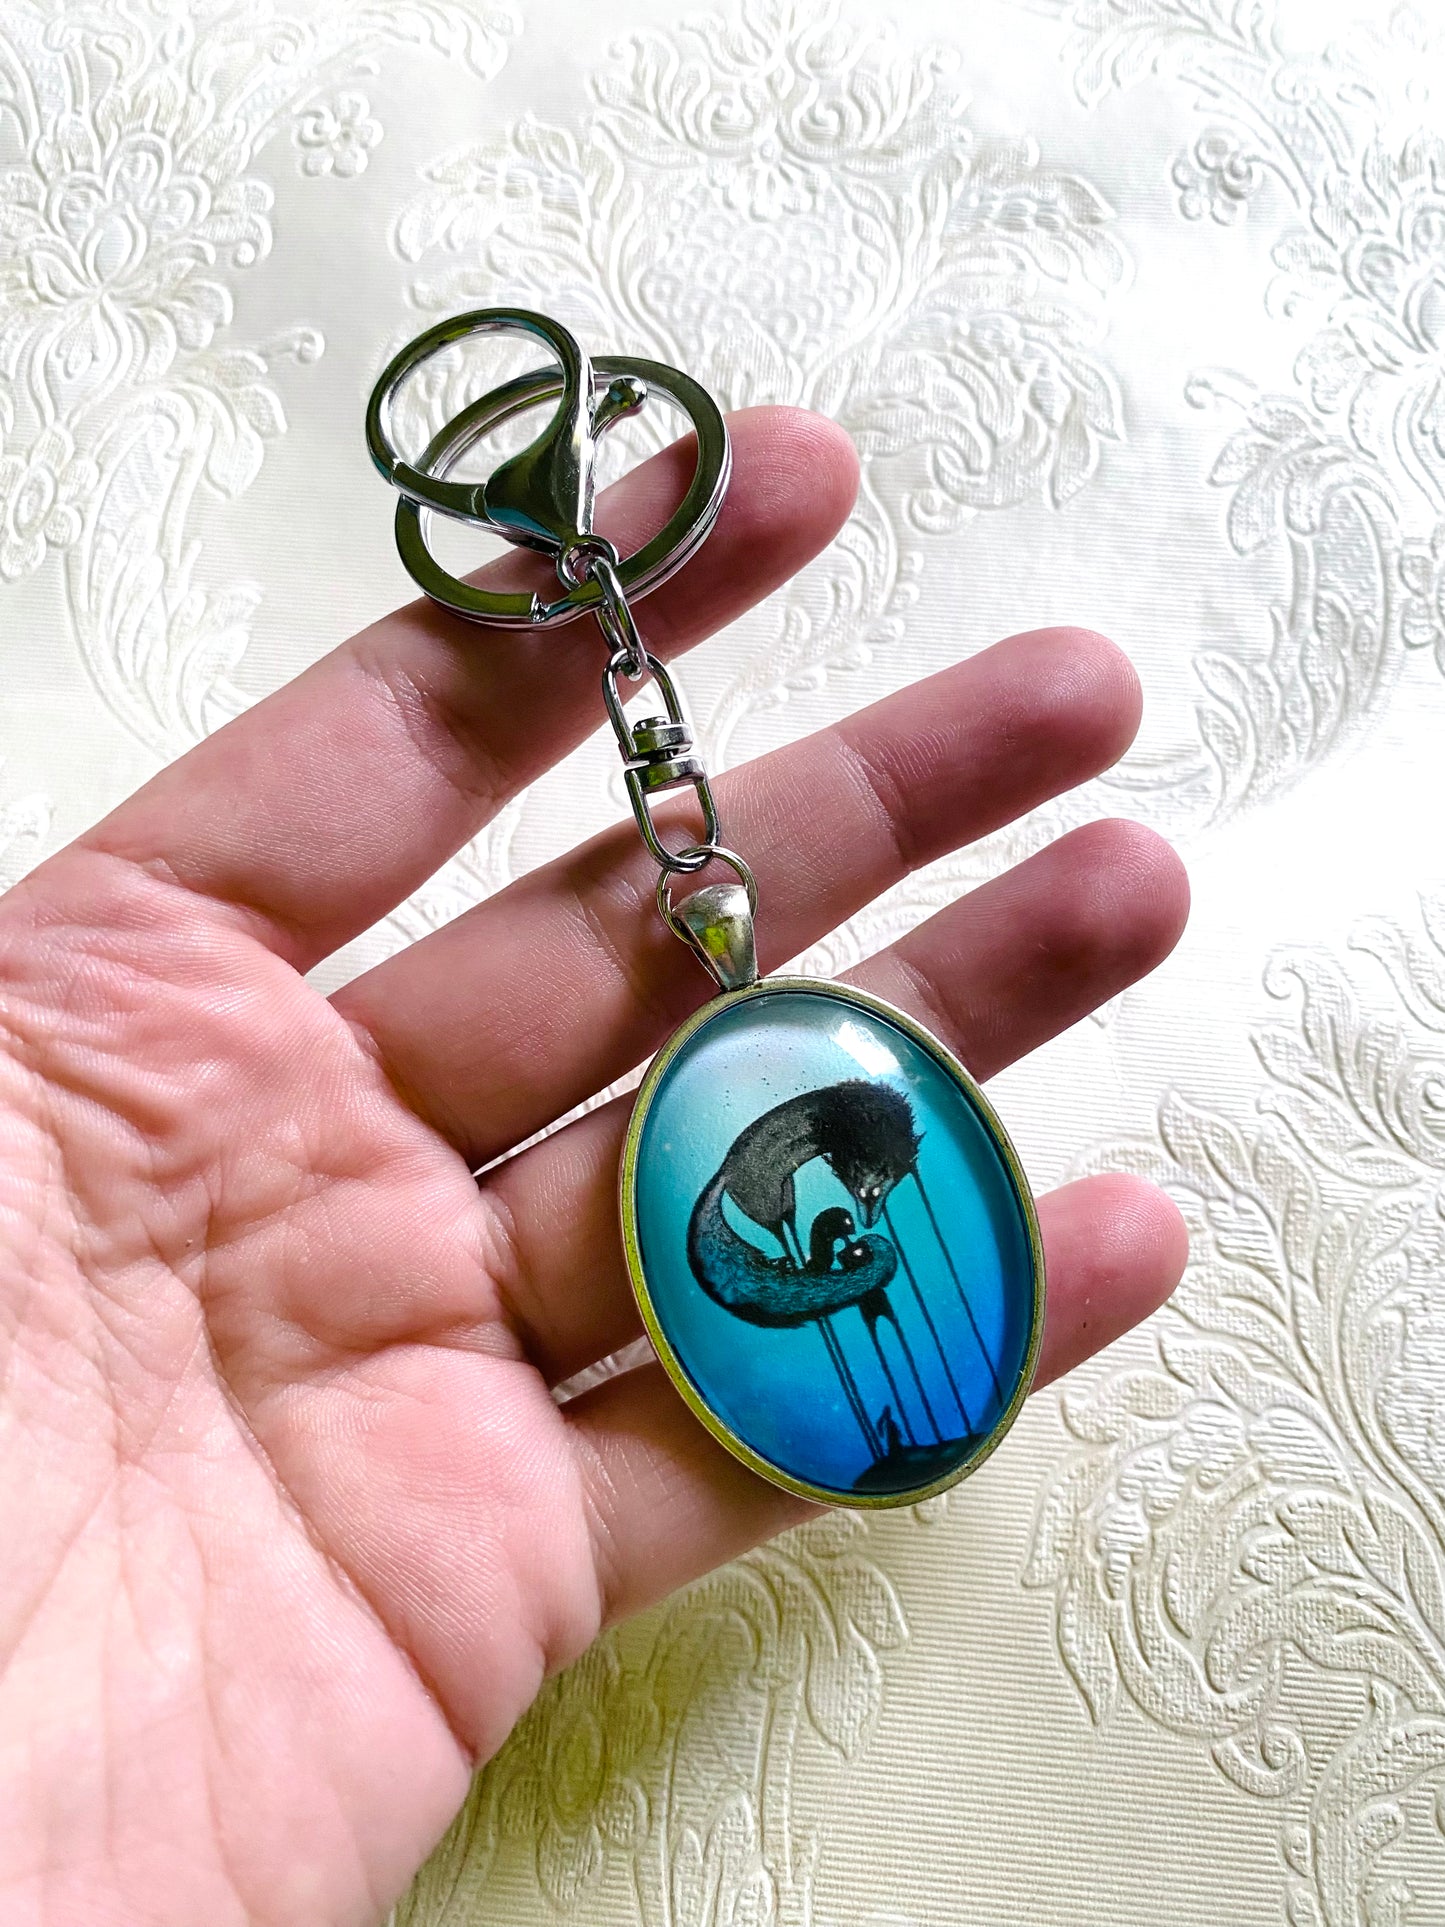 Big oval keychain / Nagy, ovális kulcstartó